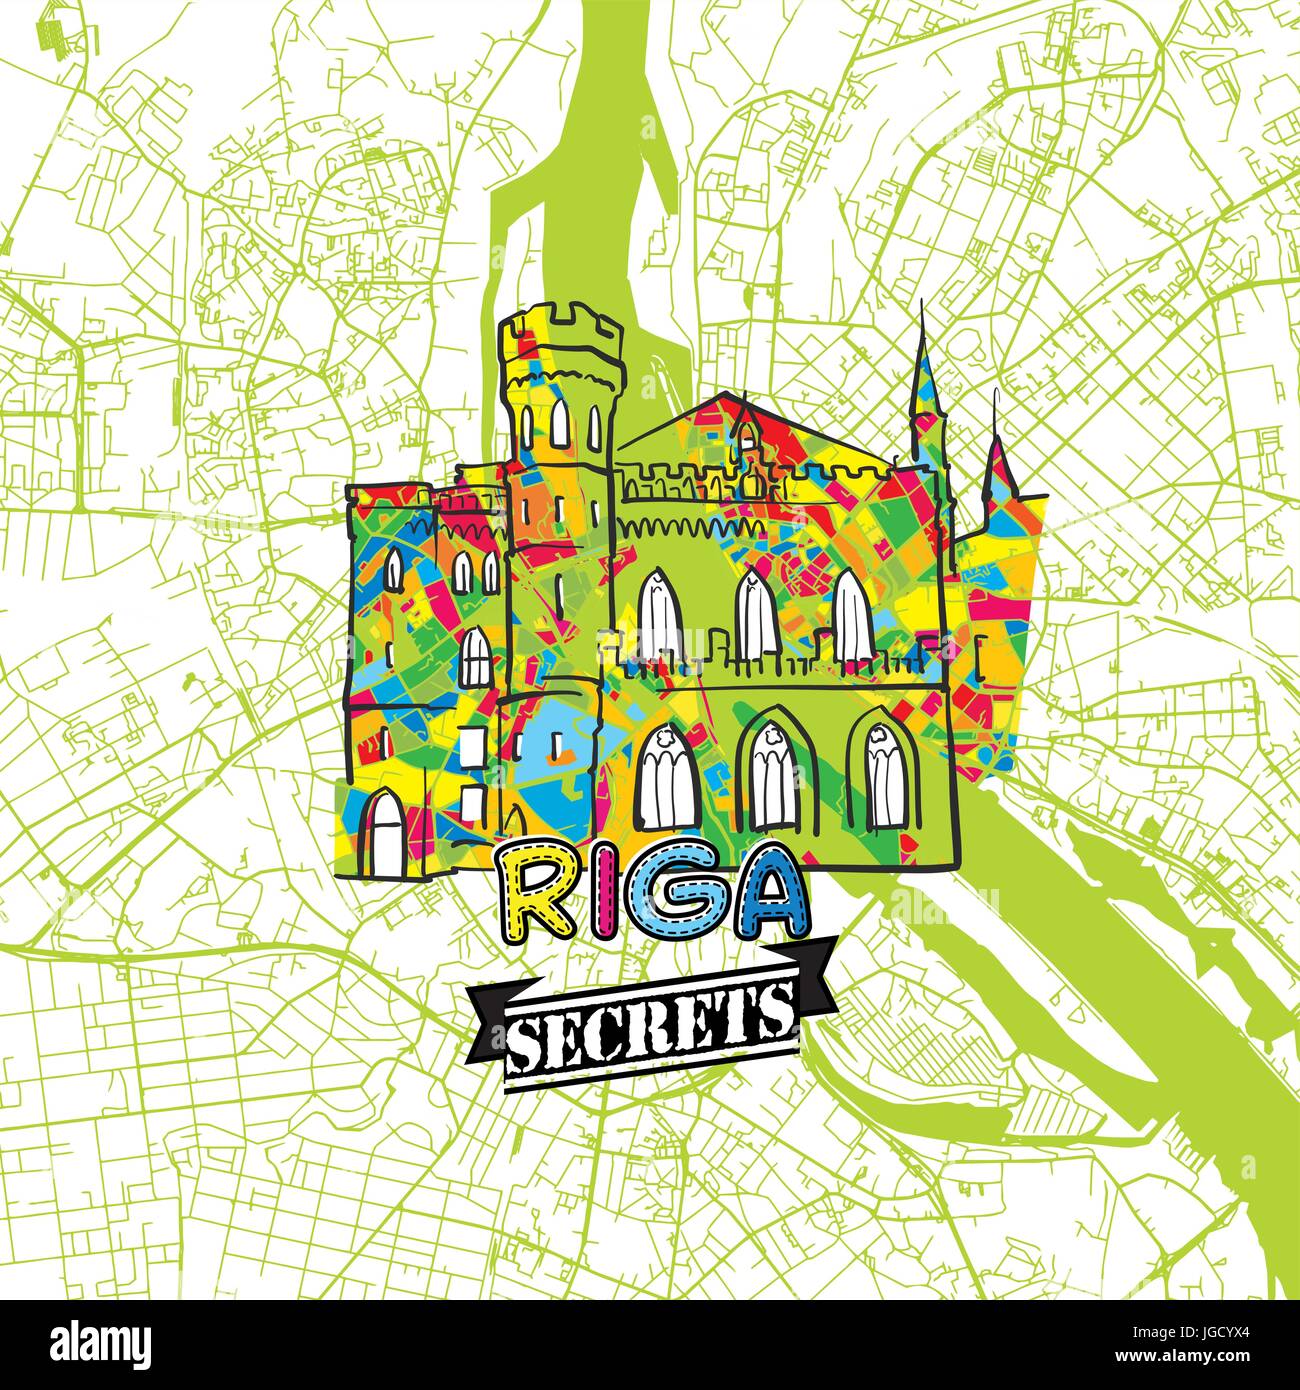 Riga Reise Geheimnisse Art Map für die Zuordnung von Experten und Reiseführer. Handgemachte Stadt Logo, Typo-Abzeichen und Hand gezeichnete Vektorbild auf Top sind gruppiert und m Stock Vektor